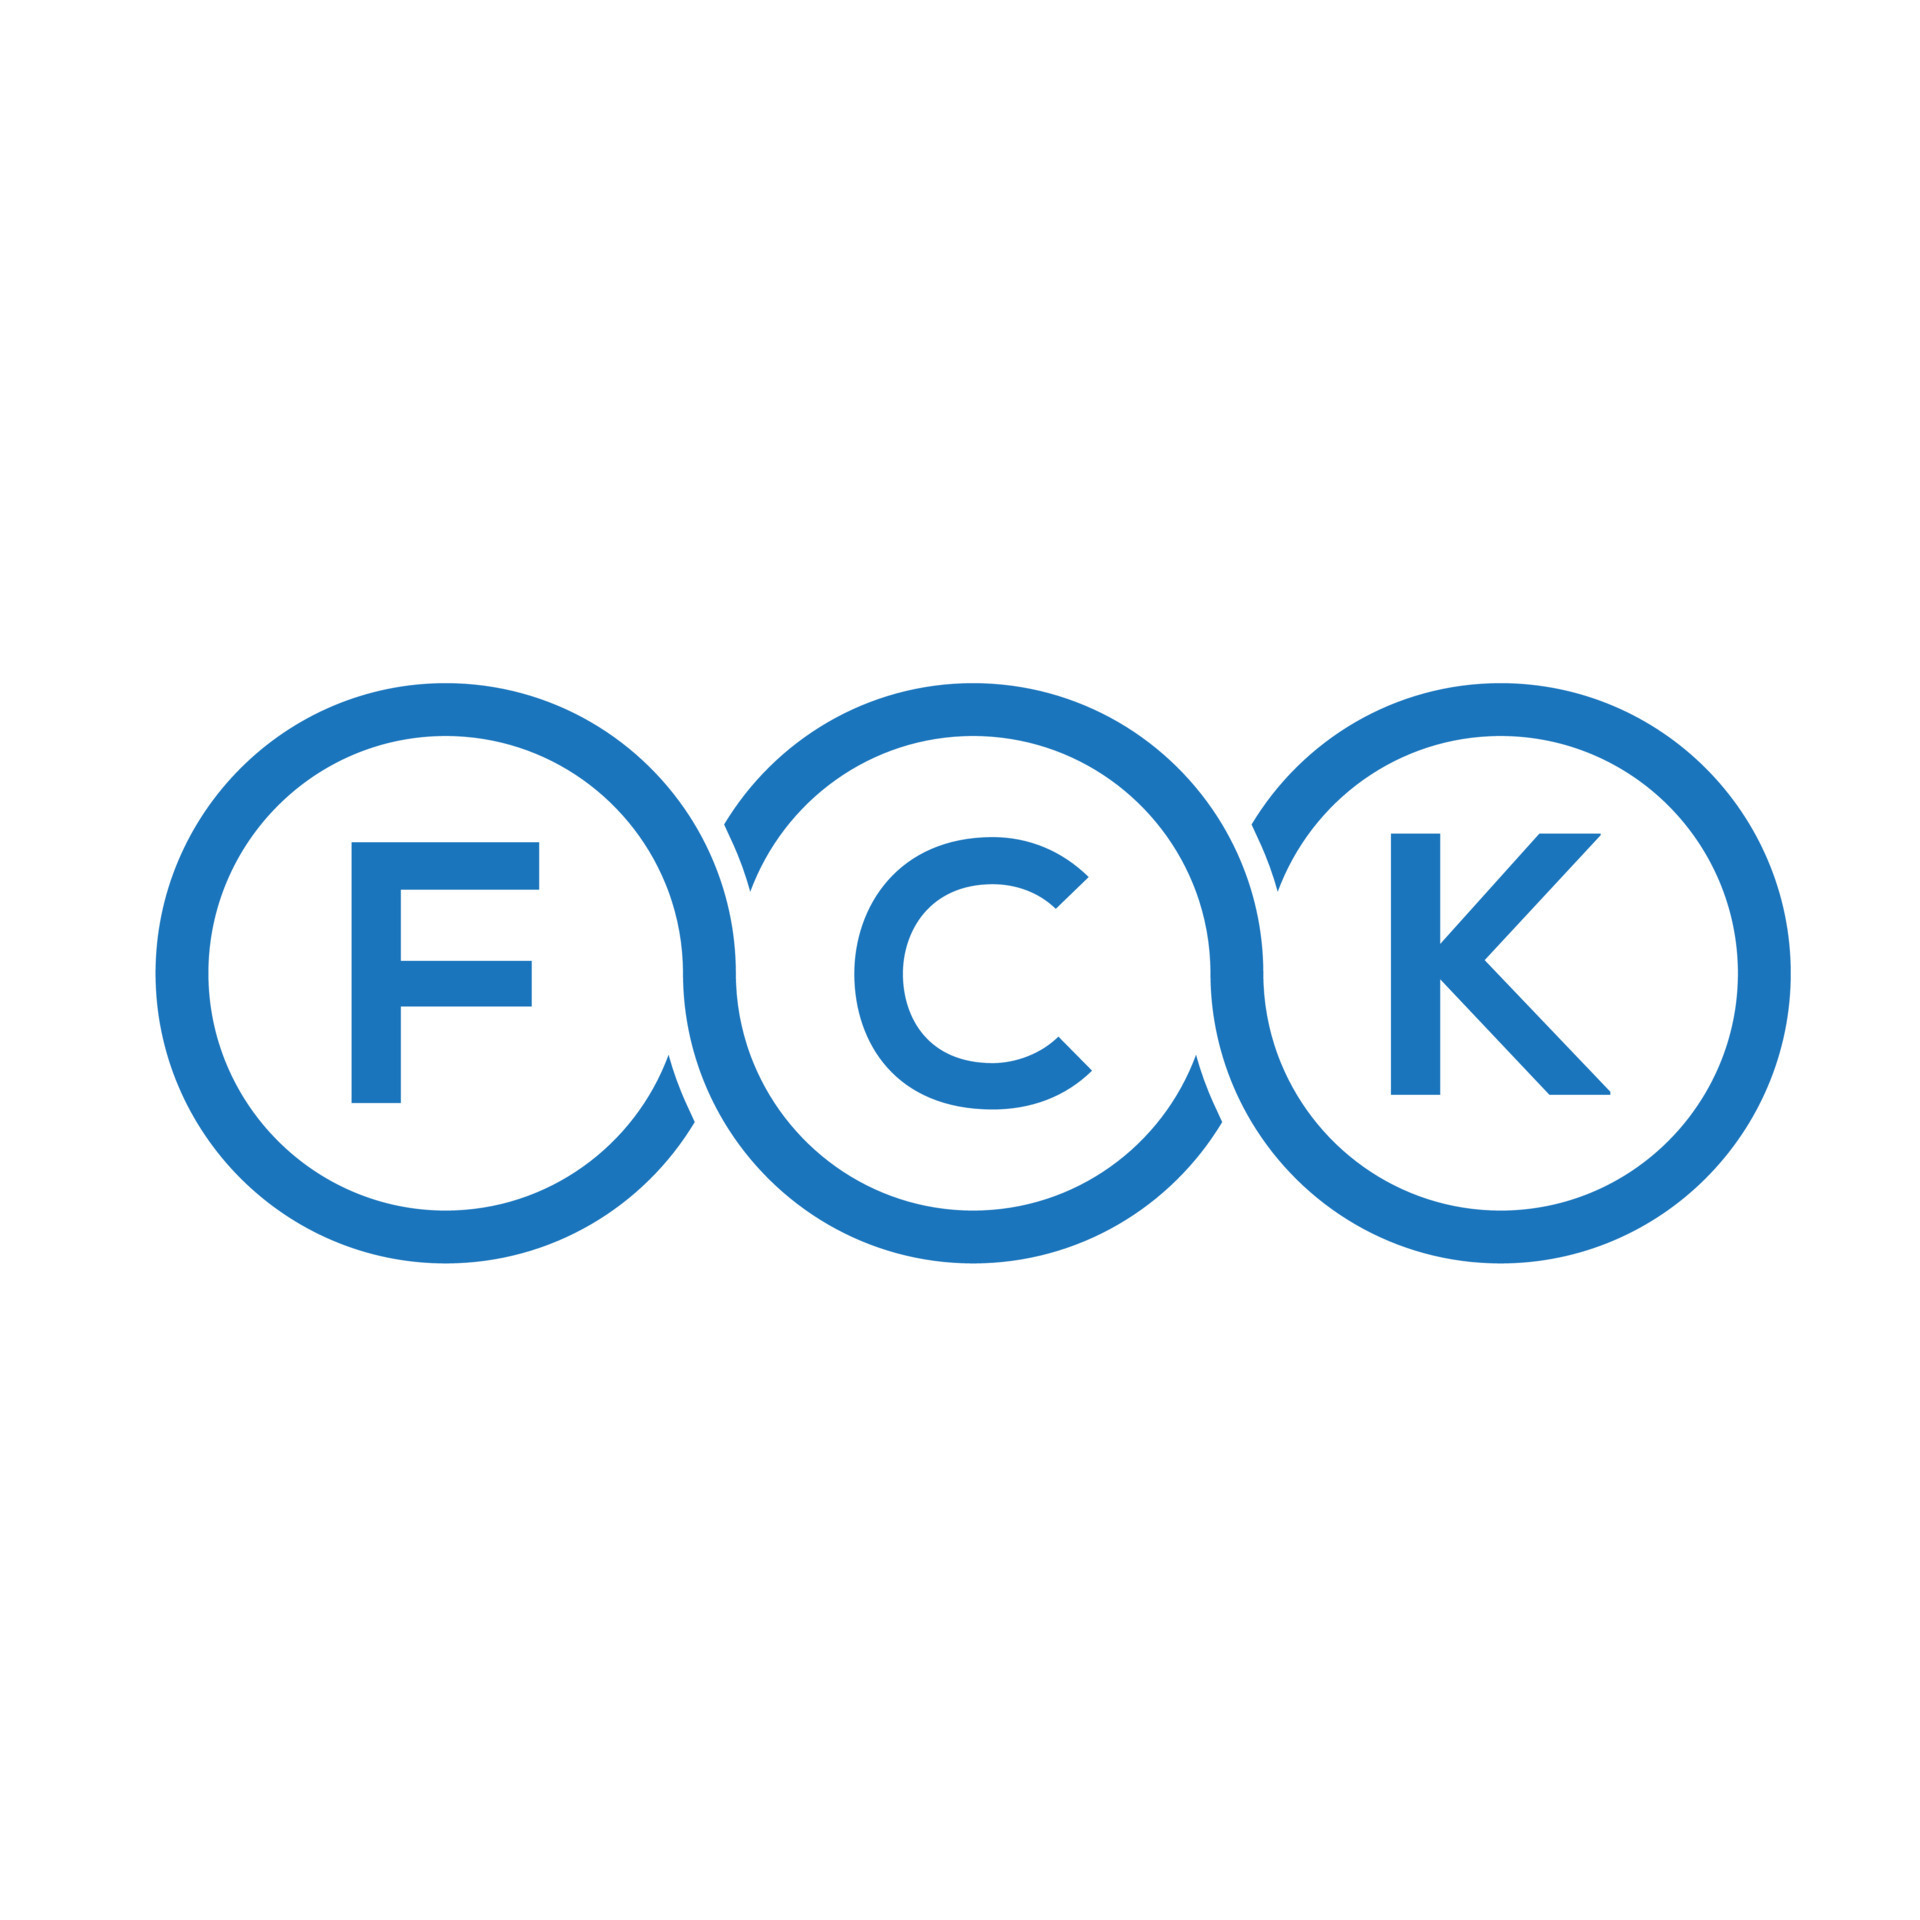 FCK letter logo design on black background. FCK creative initials ...